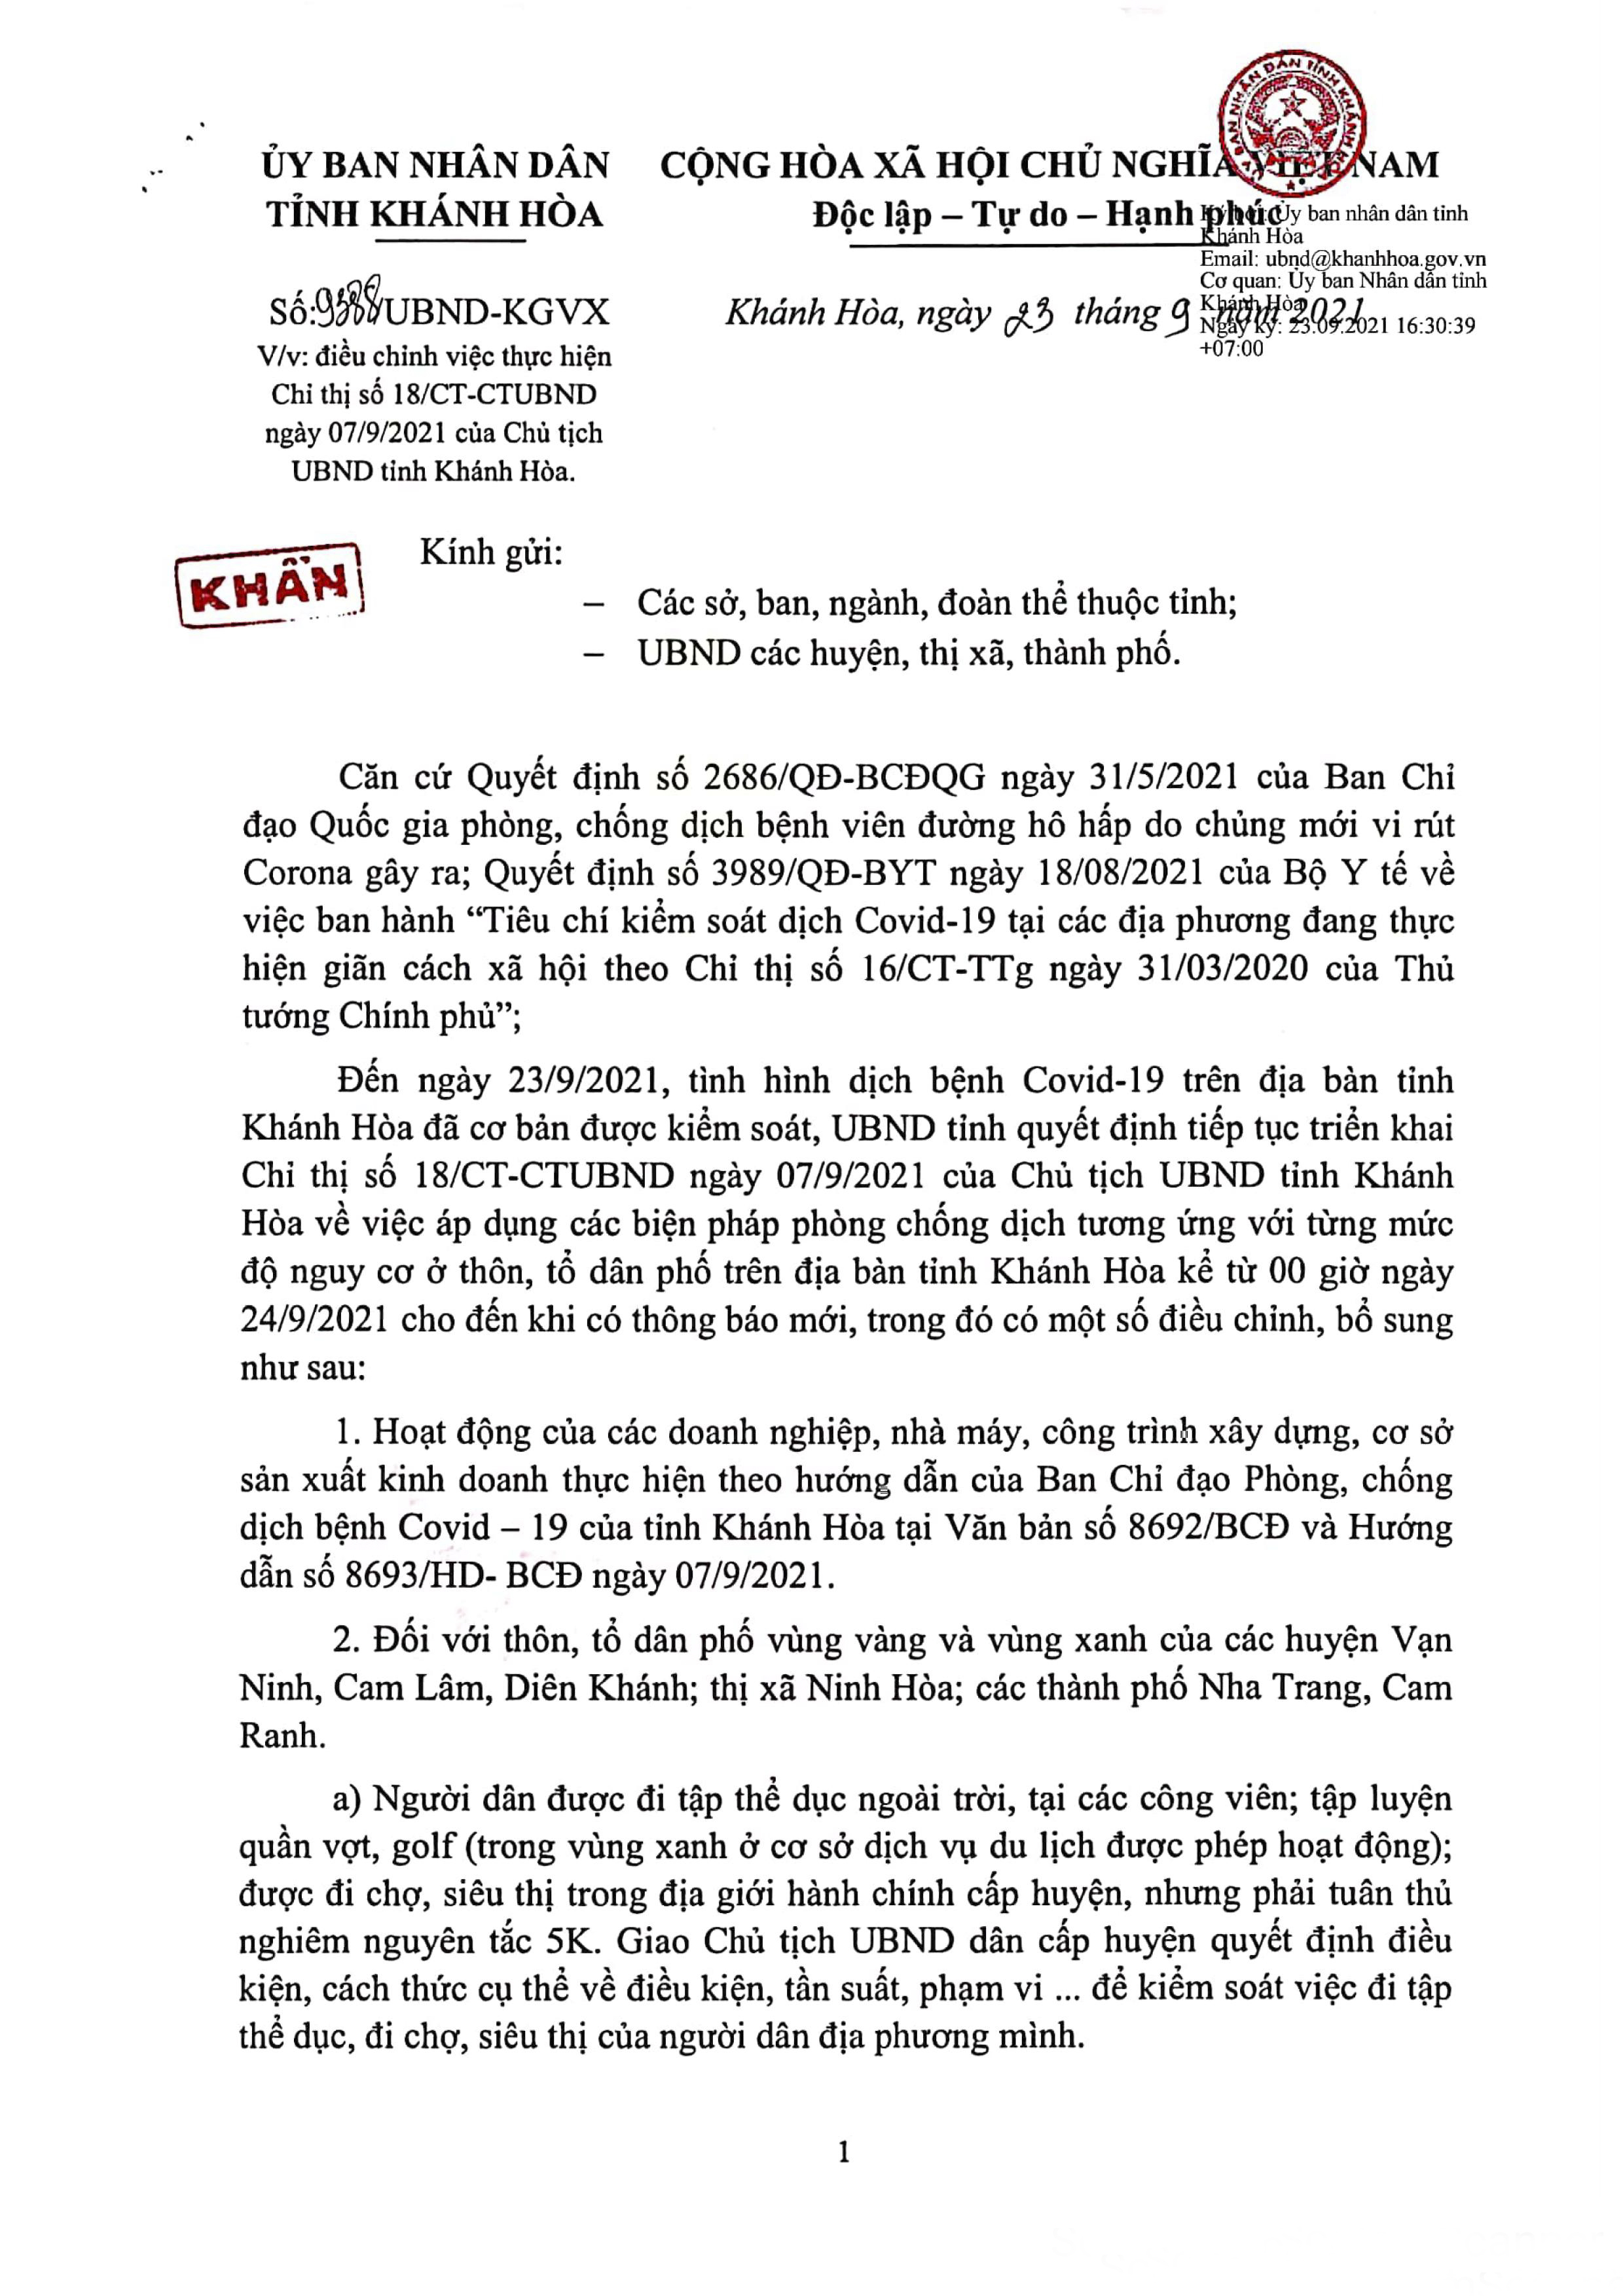 Công văn của UBND tỉnh Khánh Hòa về việc điều chỉnh thực hiện các biện pháp phòng, chống dịch Covid-19 từ ngày 24-9